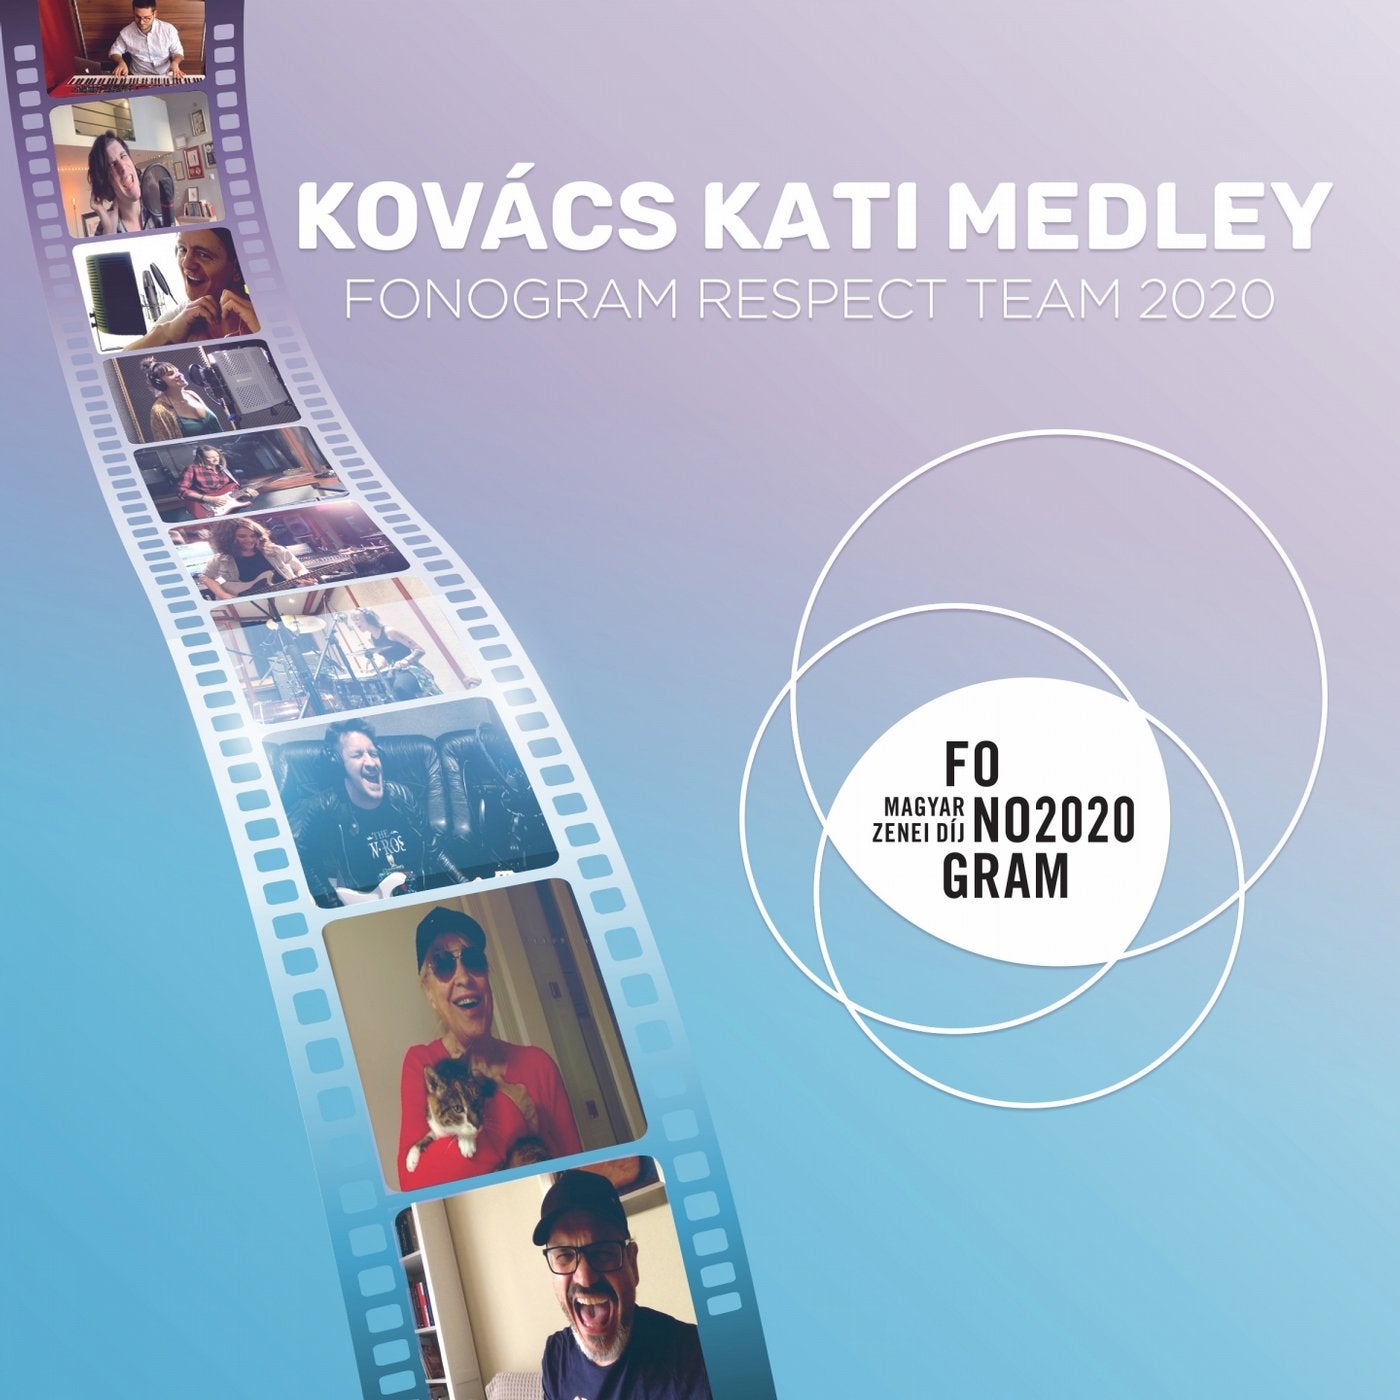 Kovacs Kati Medley: Rock And Roller / Add Mar, Uram, Az Esot / Ugy Szeretnem Meghalalni / Nem Leszek A Jatekszered / Szolj Ram, Ha Hangosan Enekelek